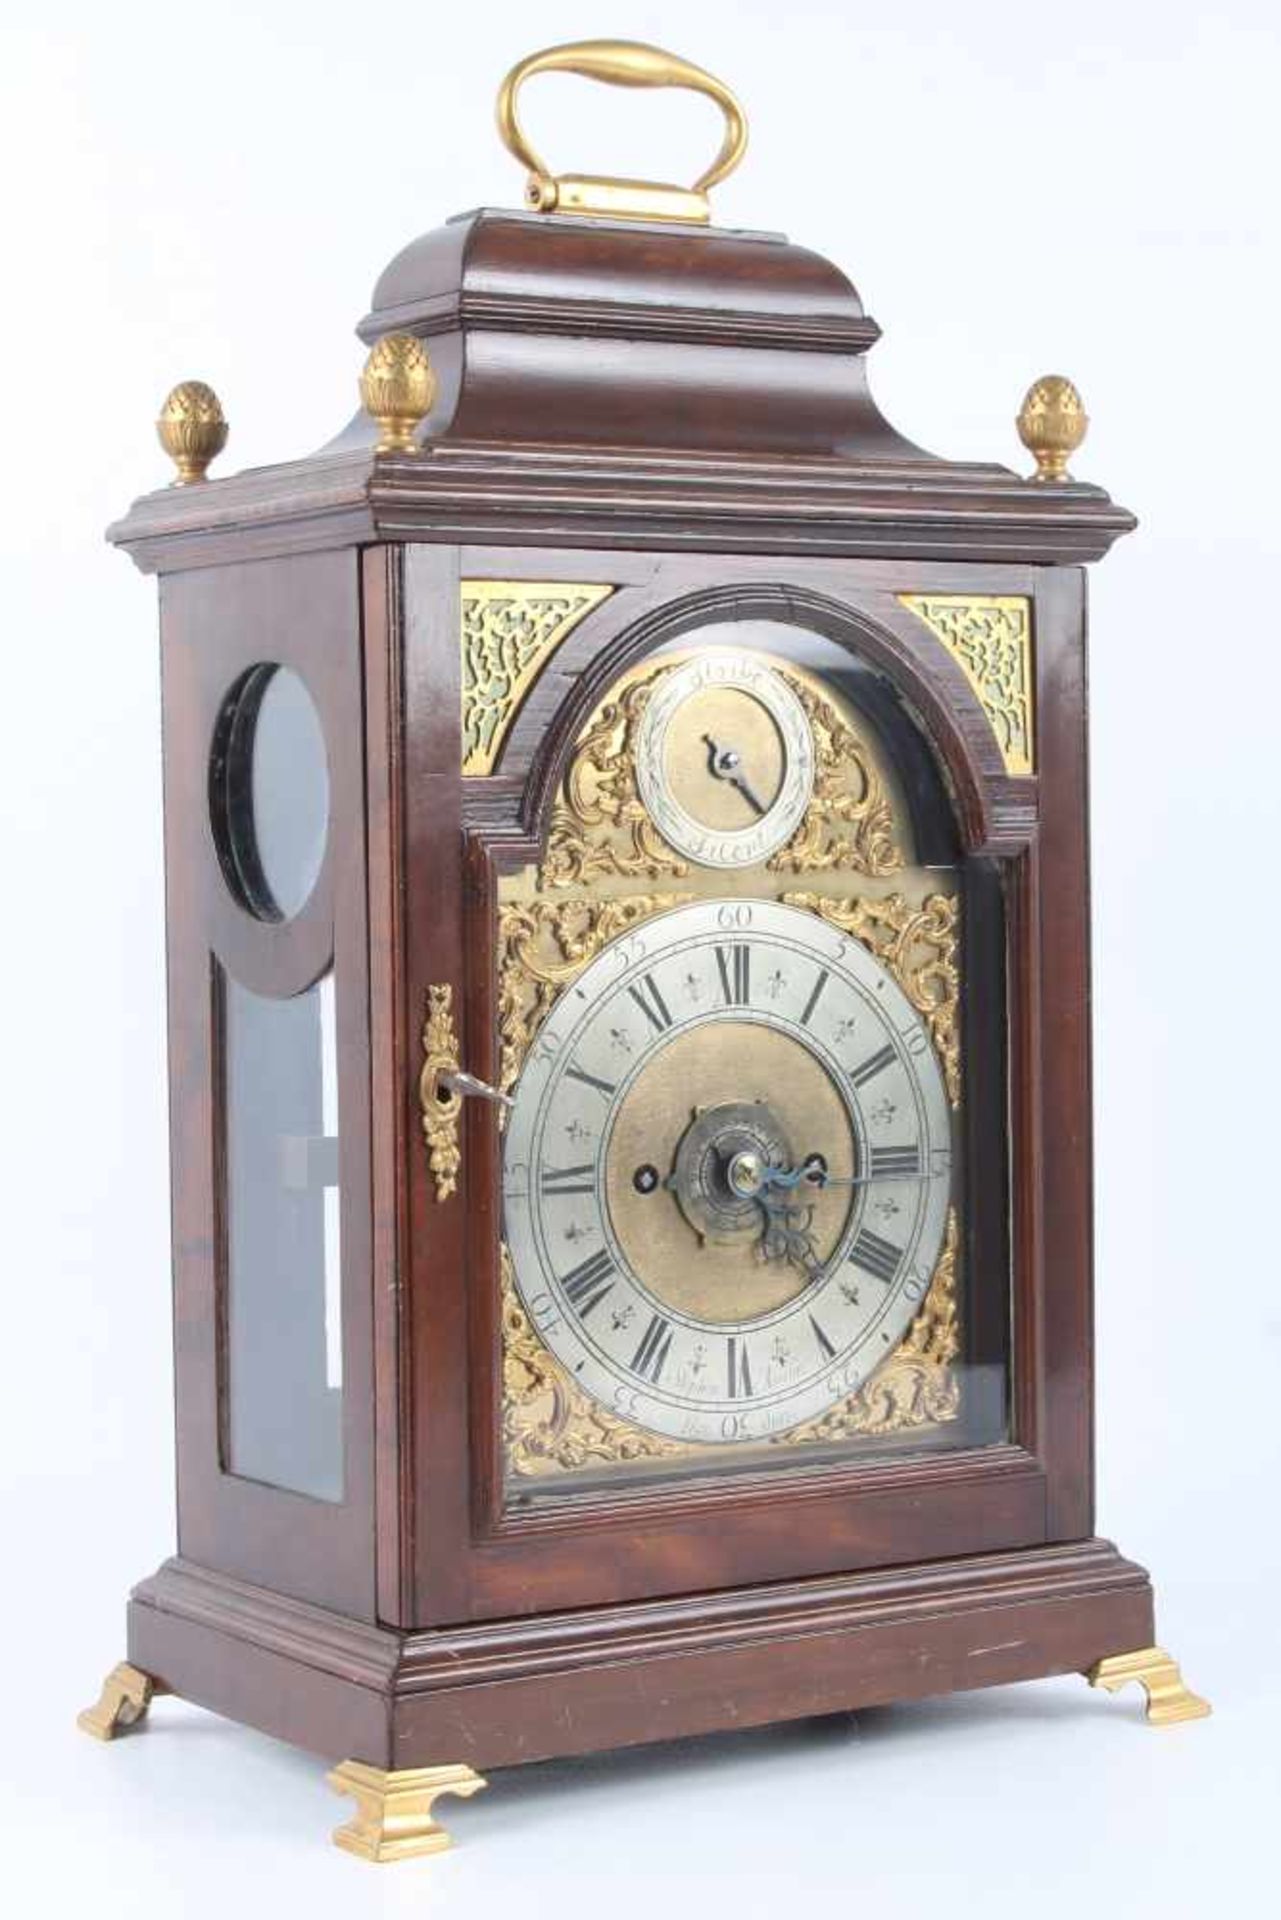 Stockuhr, London, bracket clock,Holzgehäuse m. Messingaplikken, verziertes Zifferblatt, bezeichnet - Image 2 of 6